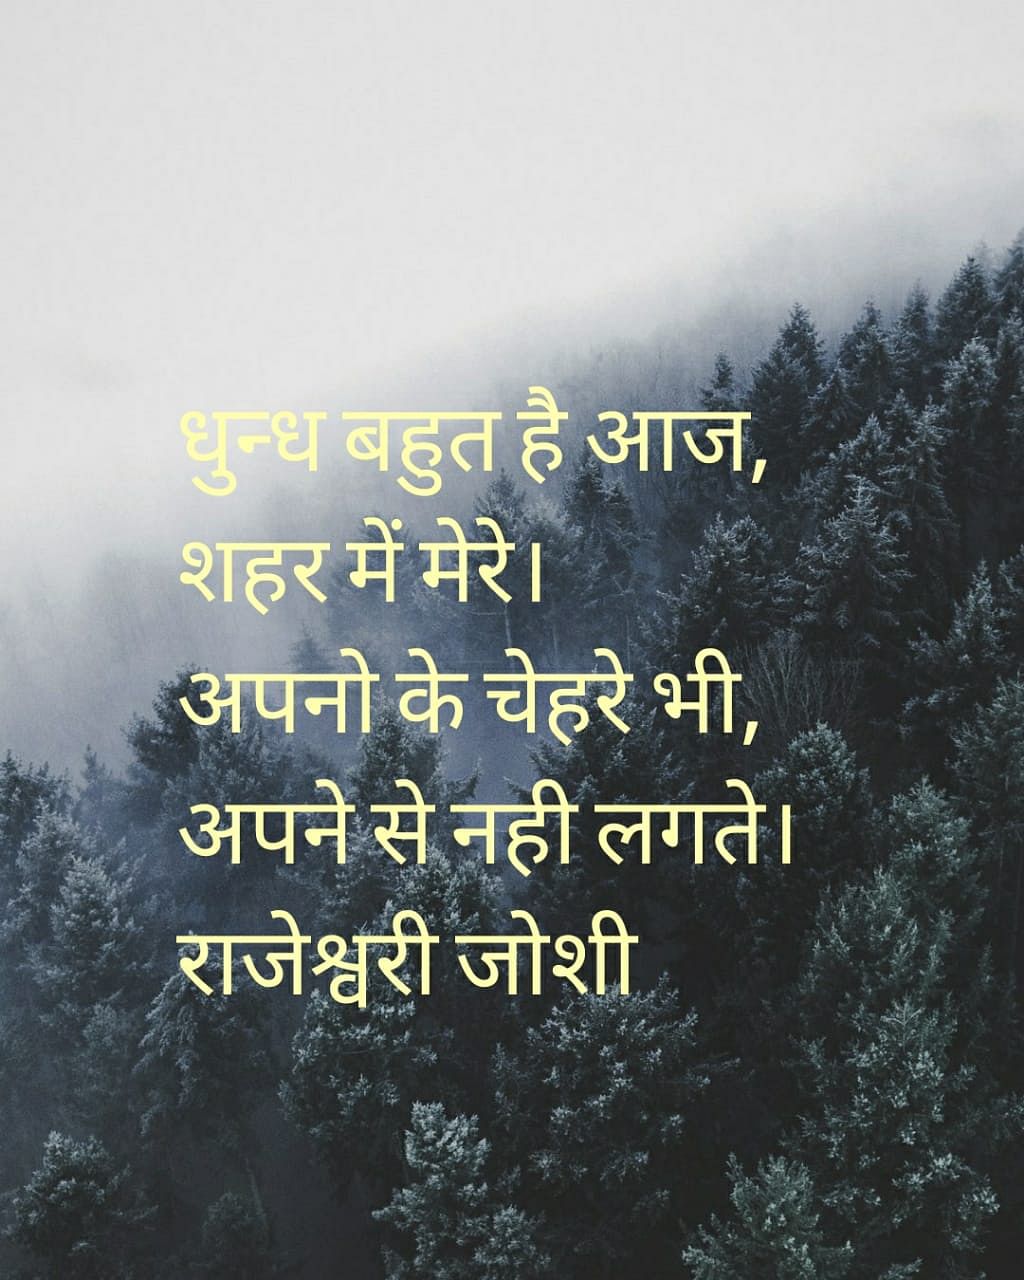 धुंध बहुत है - Dhundh Bahut Hai - Amar Ujala Kavya